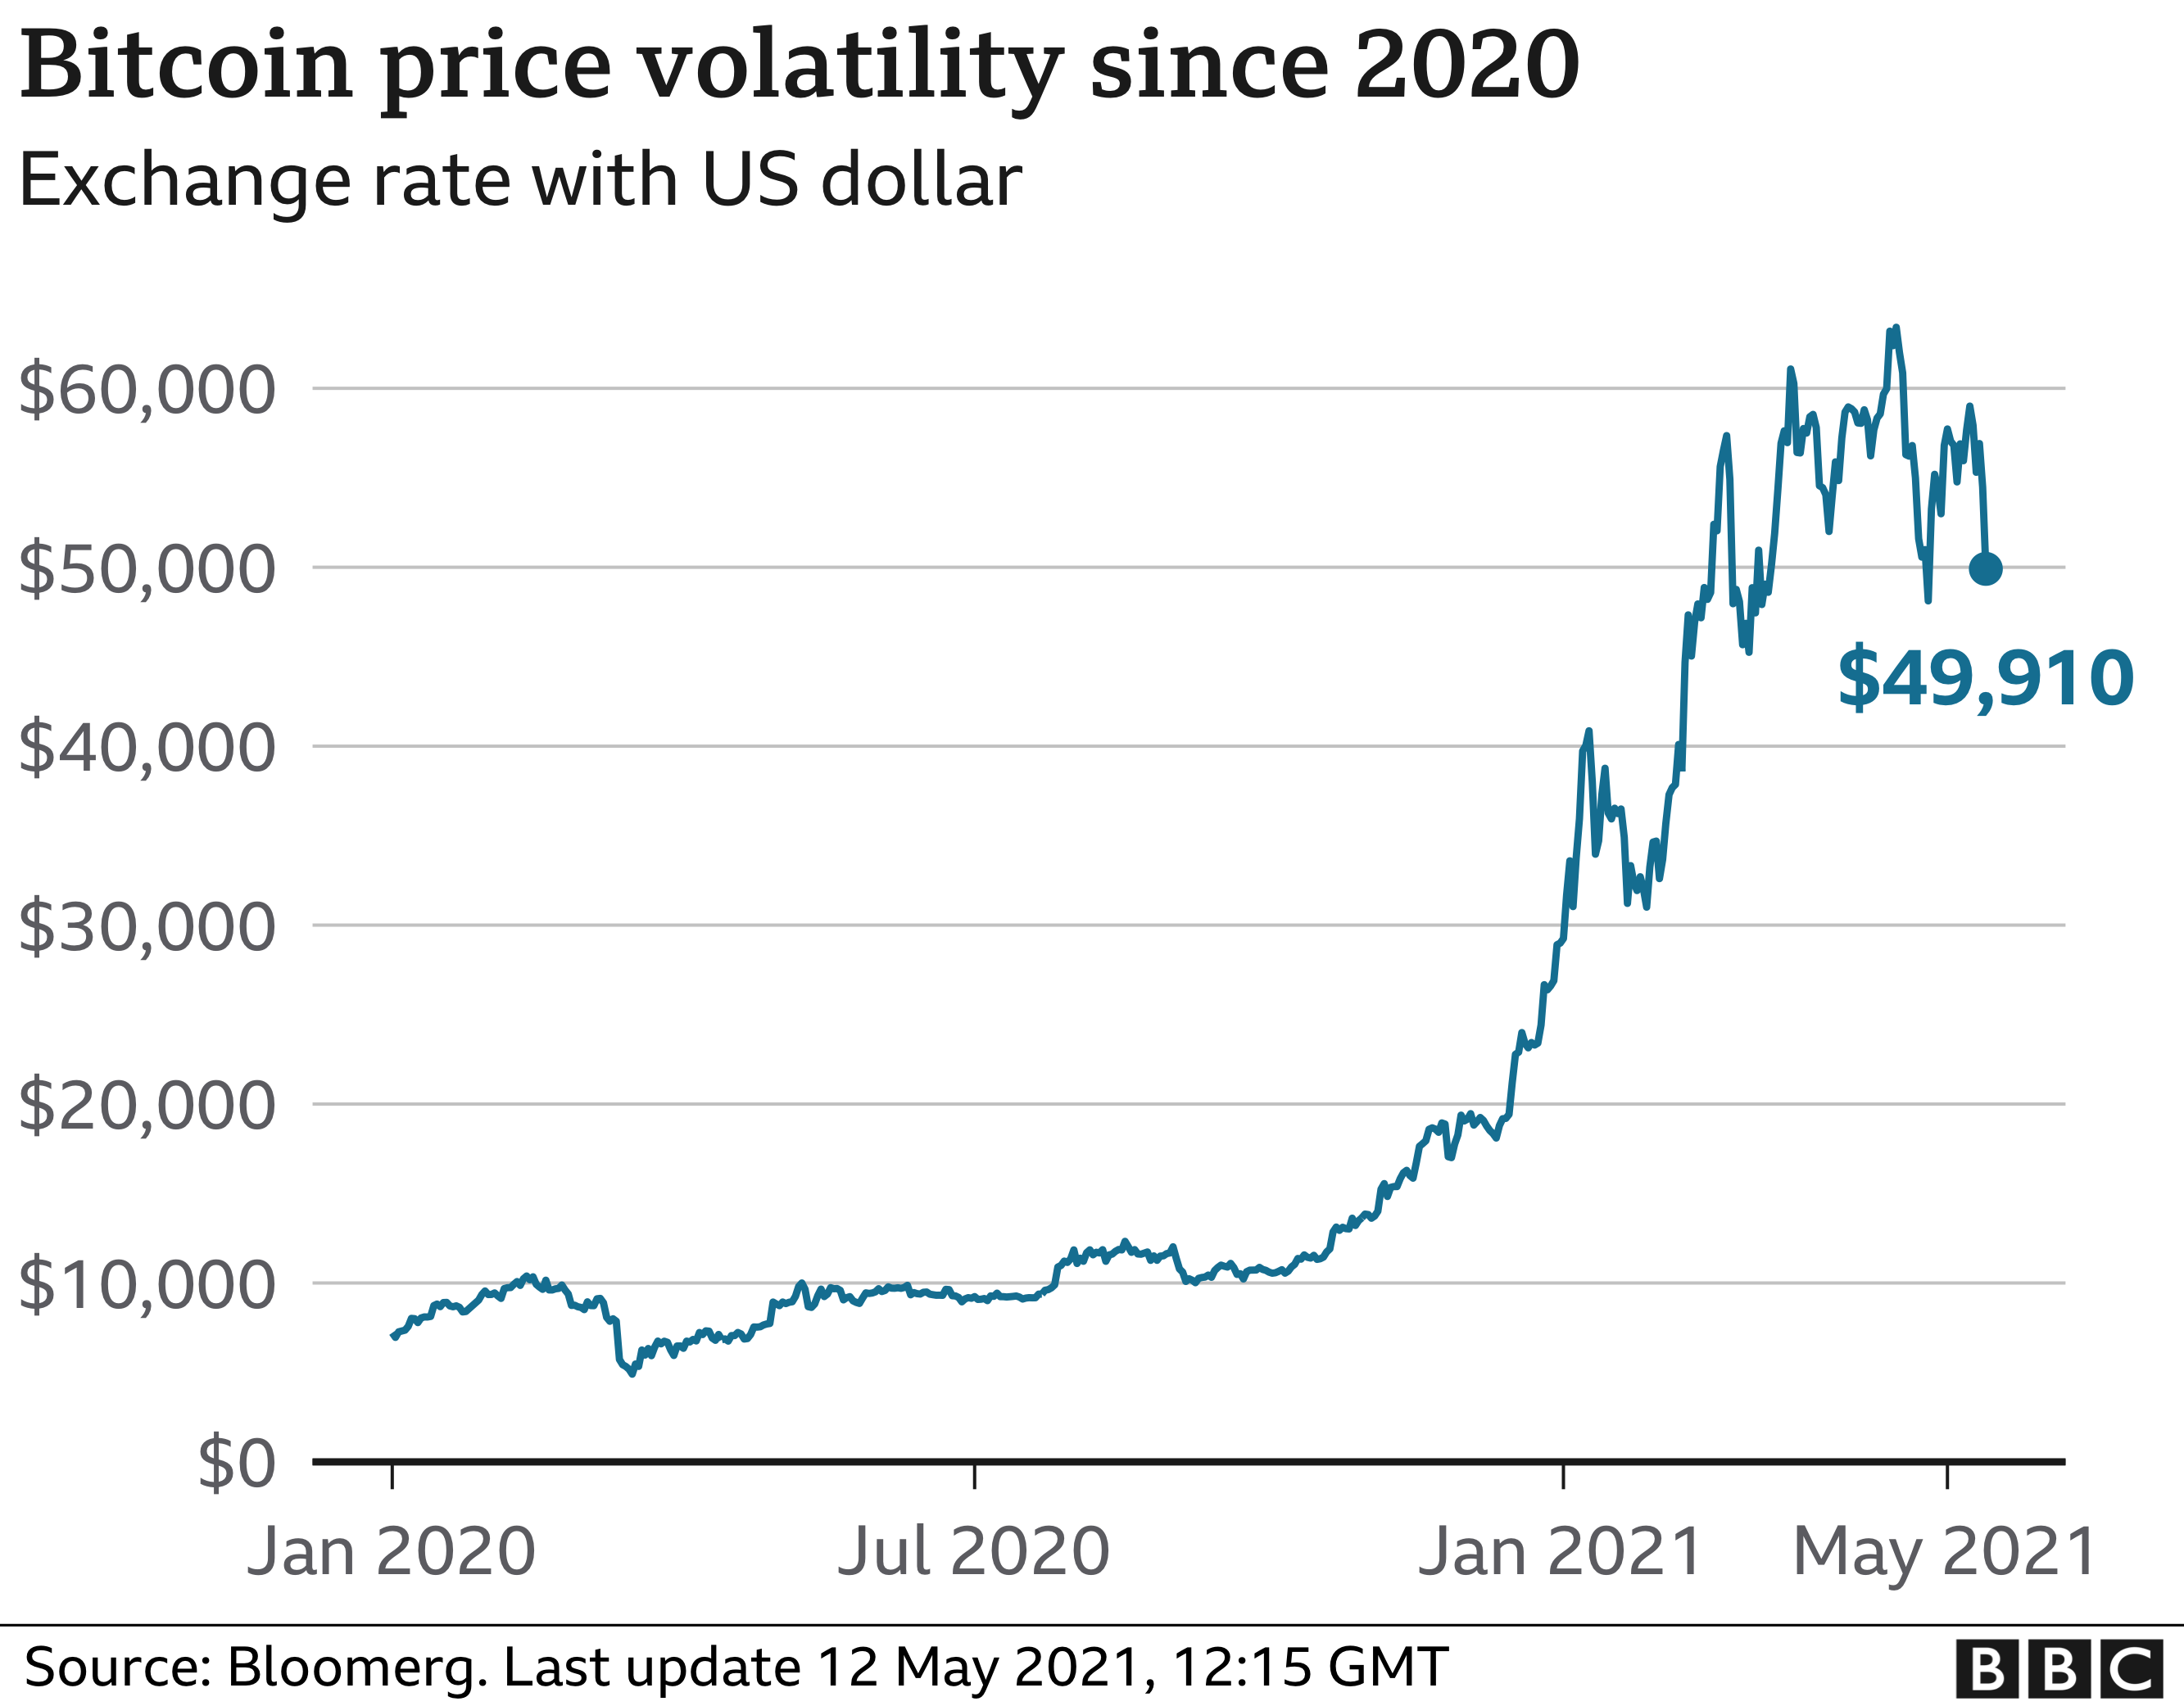 Bitcoin променливост на цените от 2020 г. Източник: BBC News.